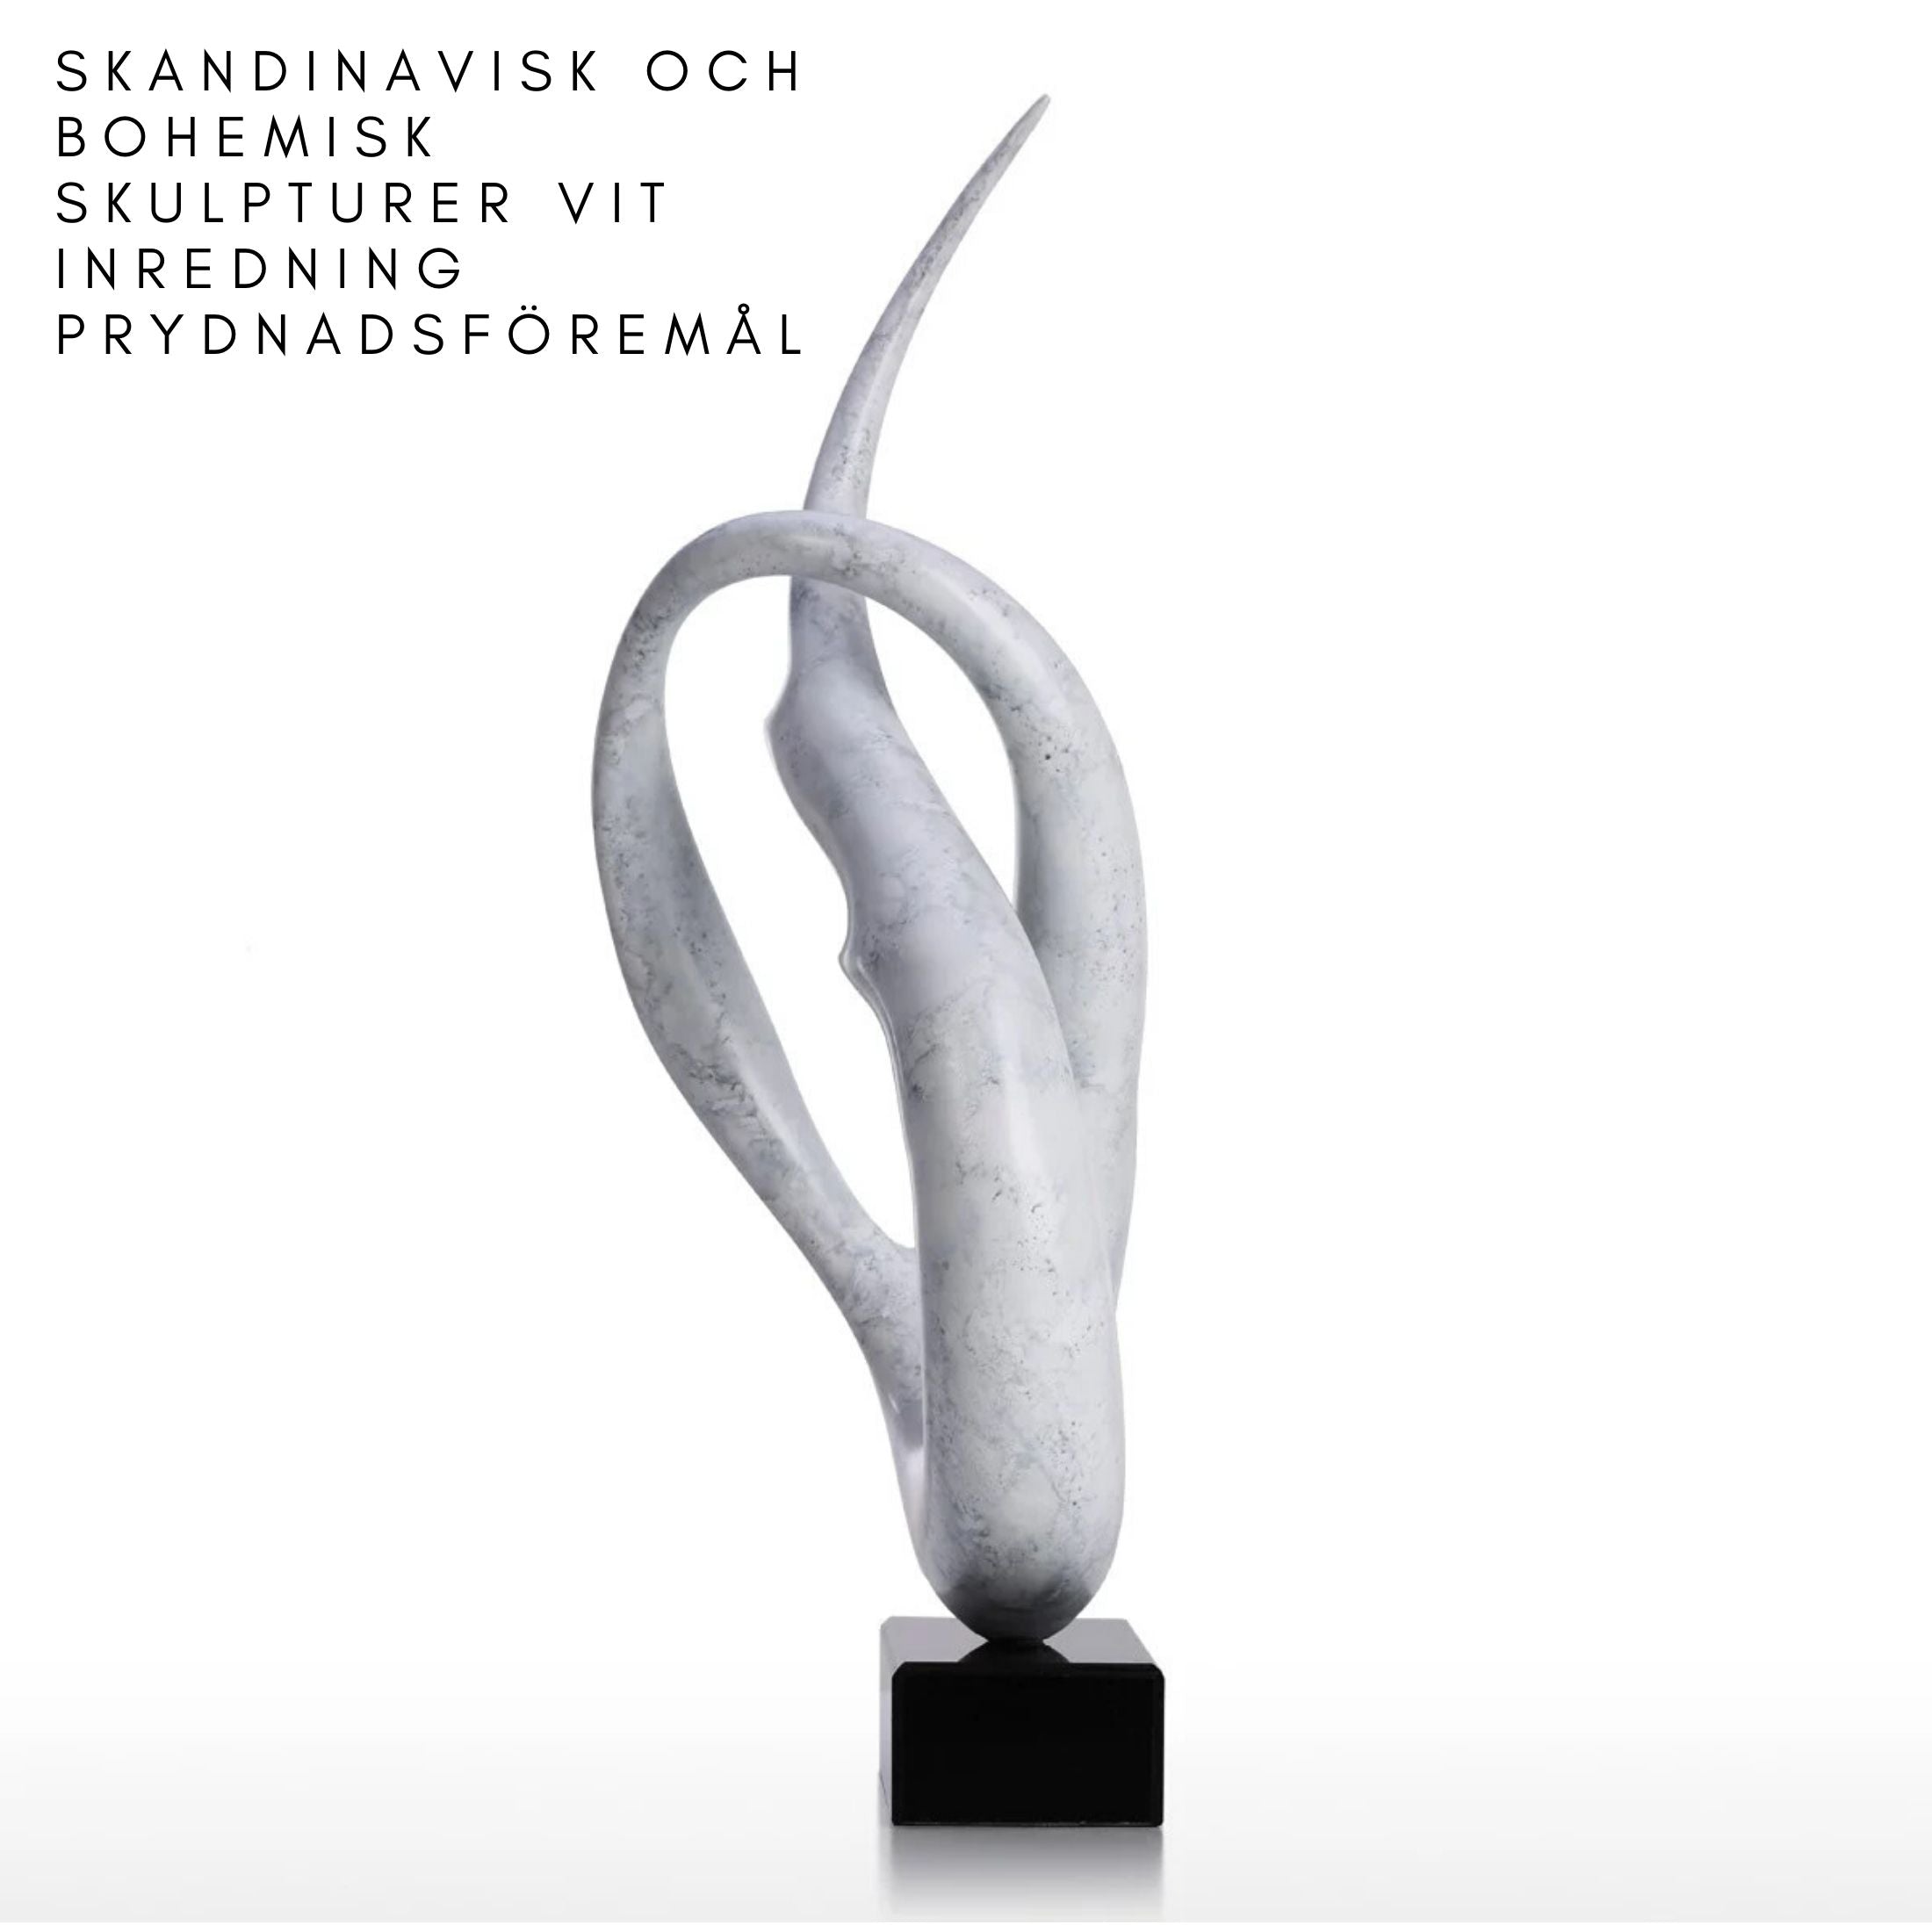 Skandinavisk och Bohemisk Skulpturer Vit Inredning Prydnadsföremål